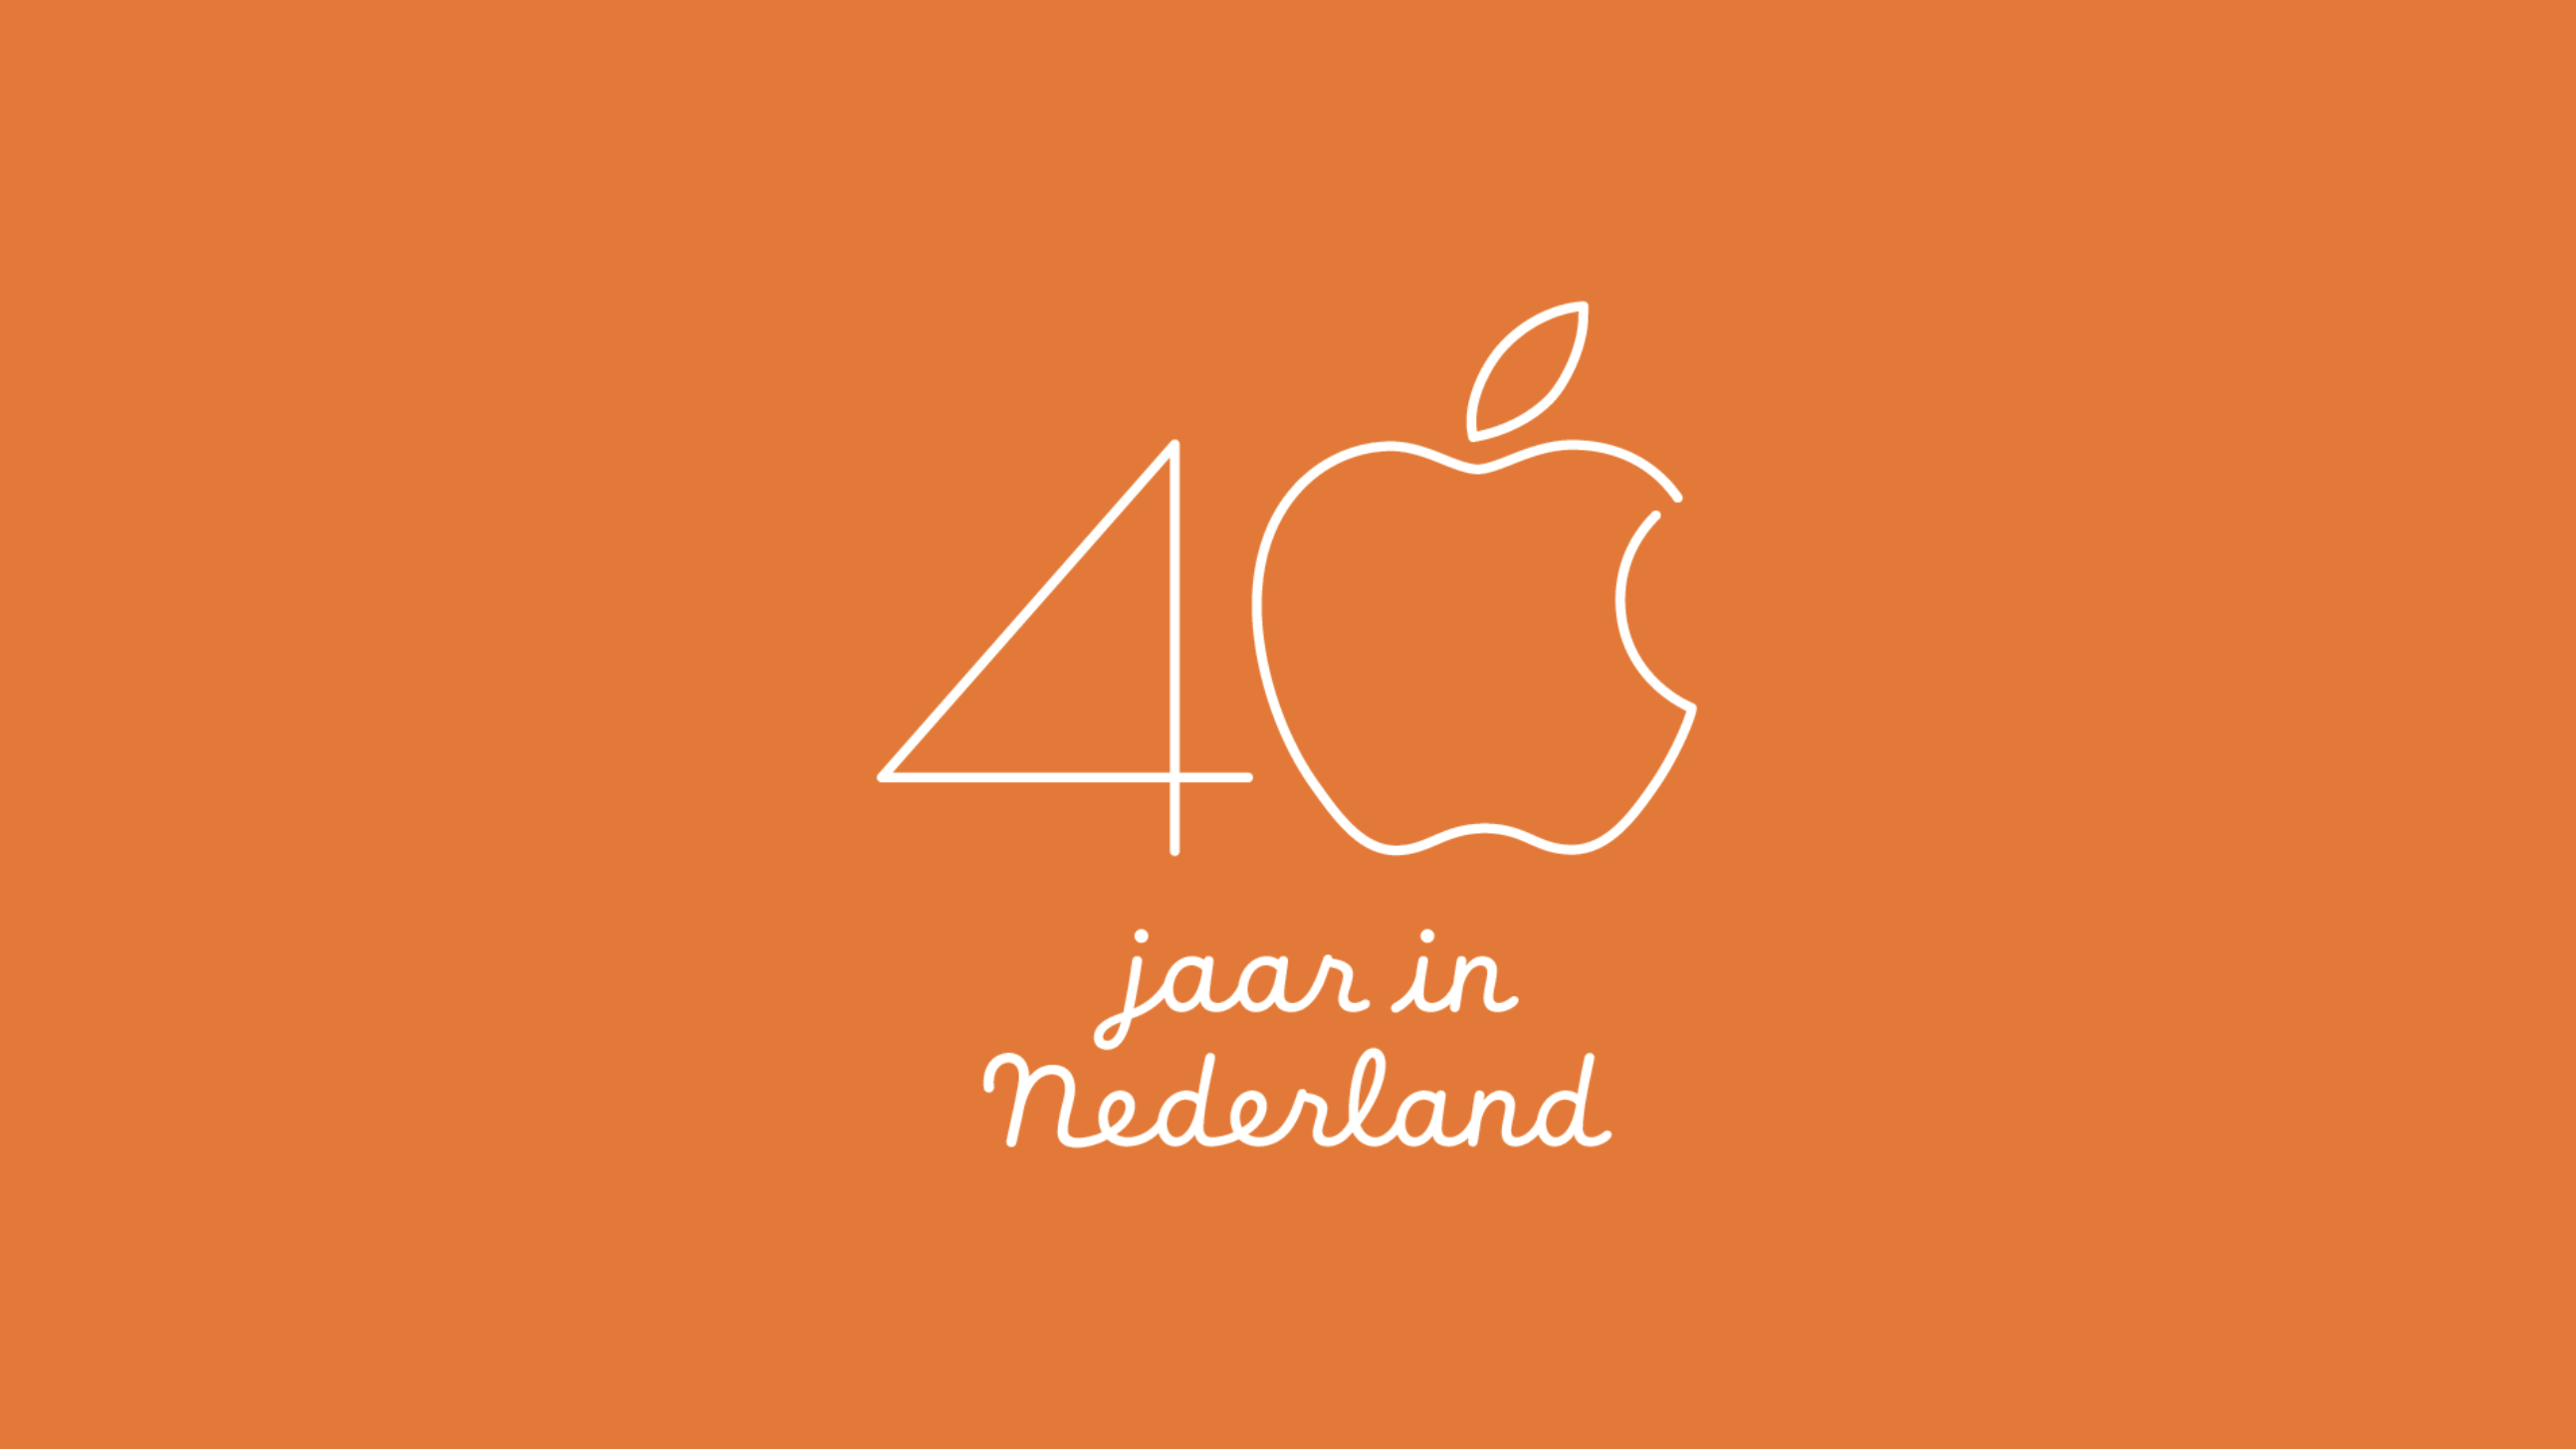 Apple 40 jaar in Nederland: dit betekende ons voor zijn immense succes